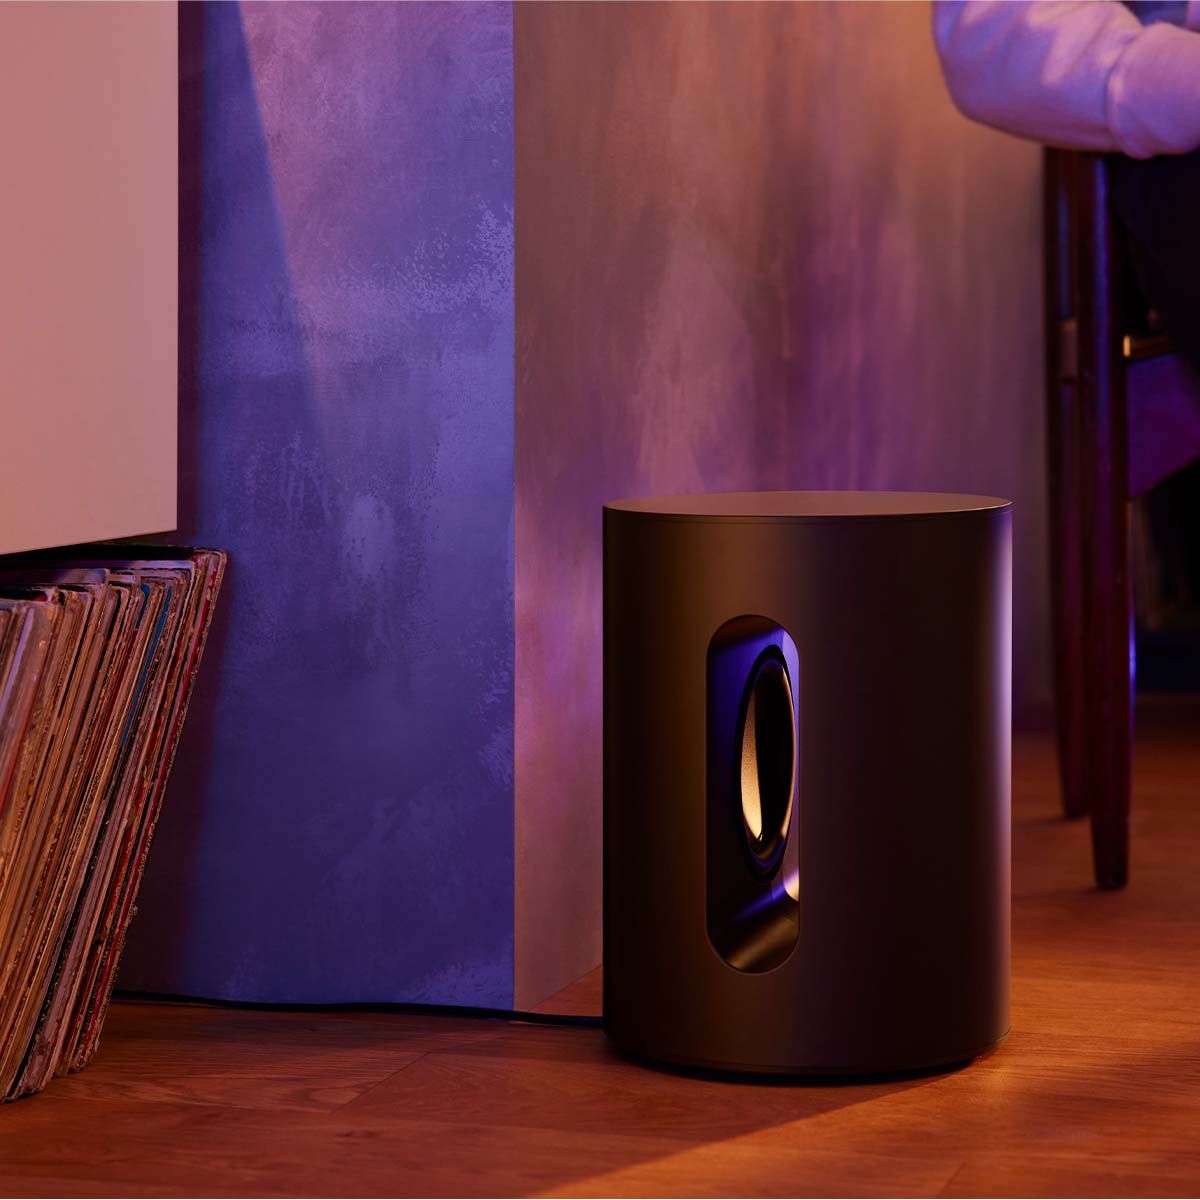 Sonos Sub Mini - Black - in room by records